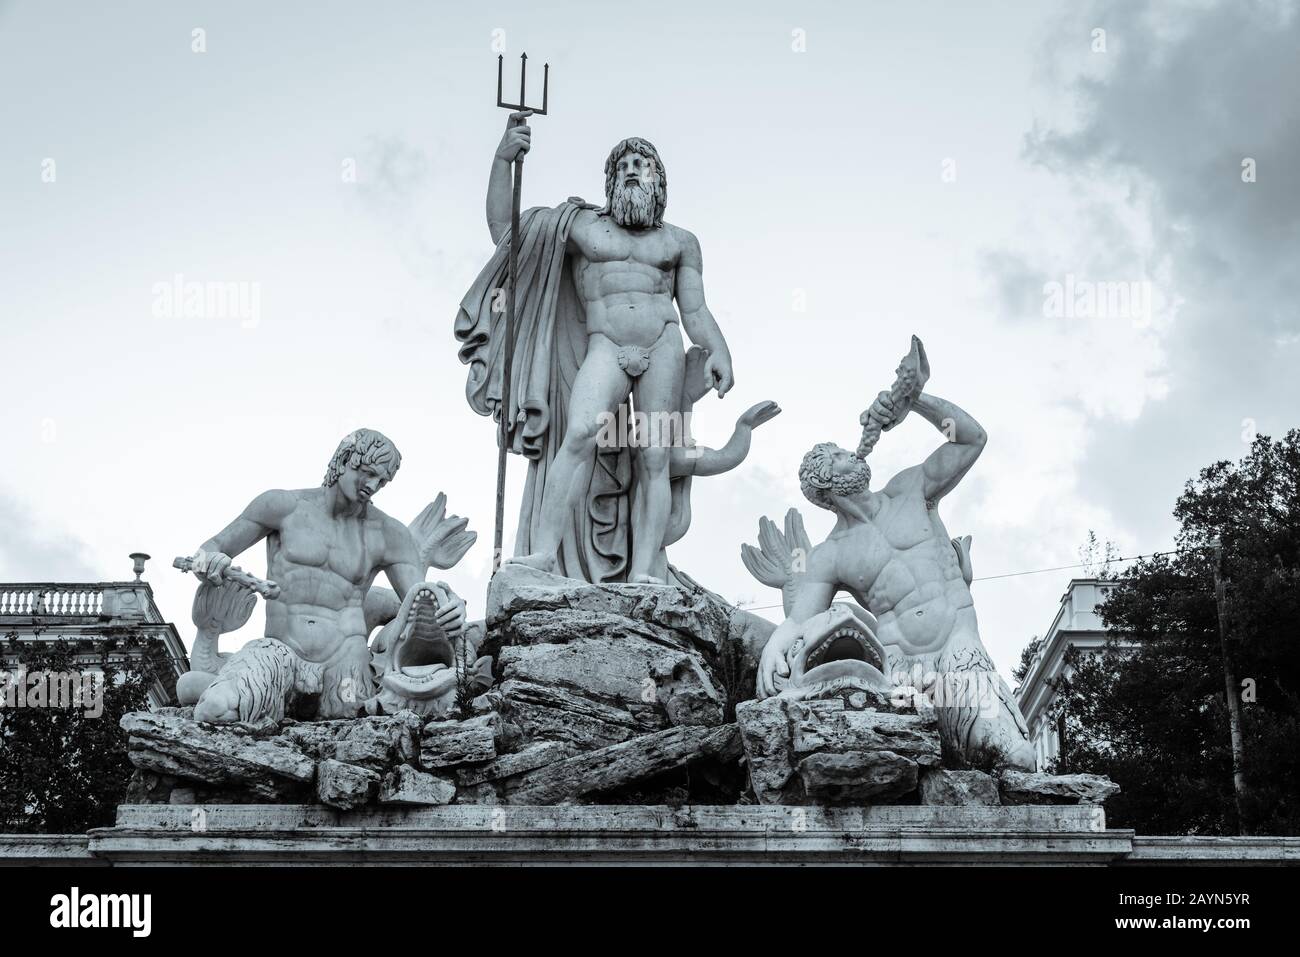 Scupltures of Fontana del Nettuno or The Fountain of Neptune on Piazza del Popolo in Rome, Italy Stock Photo